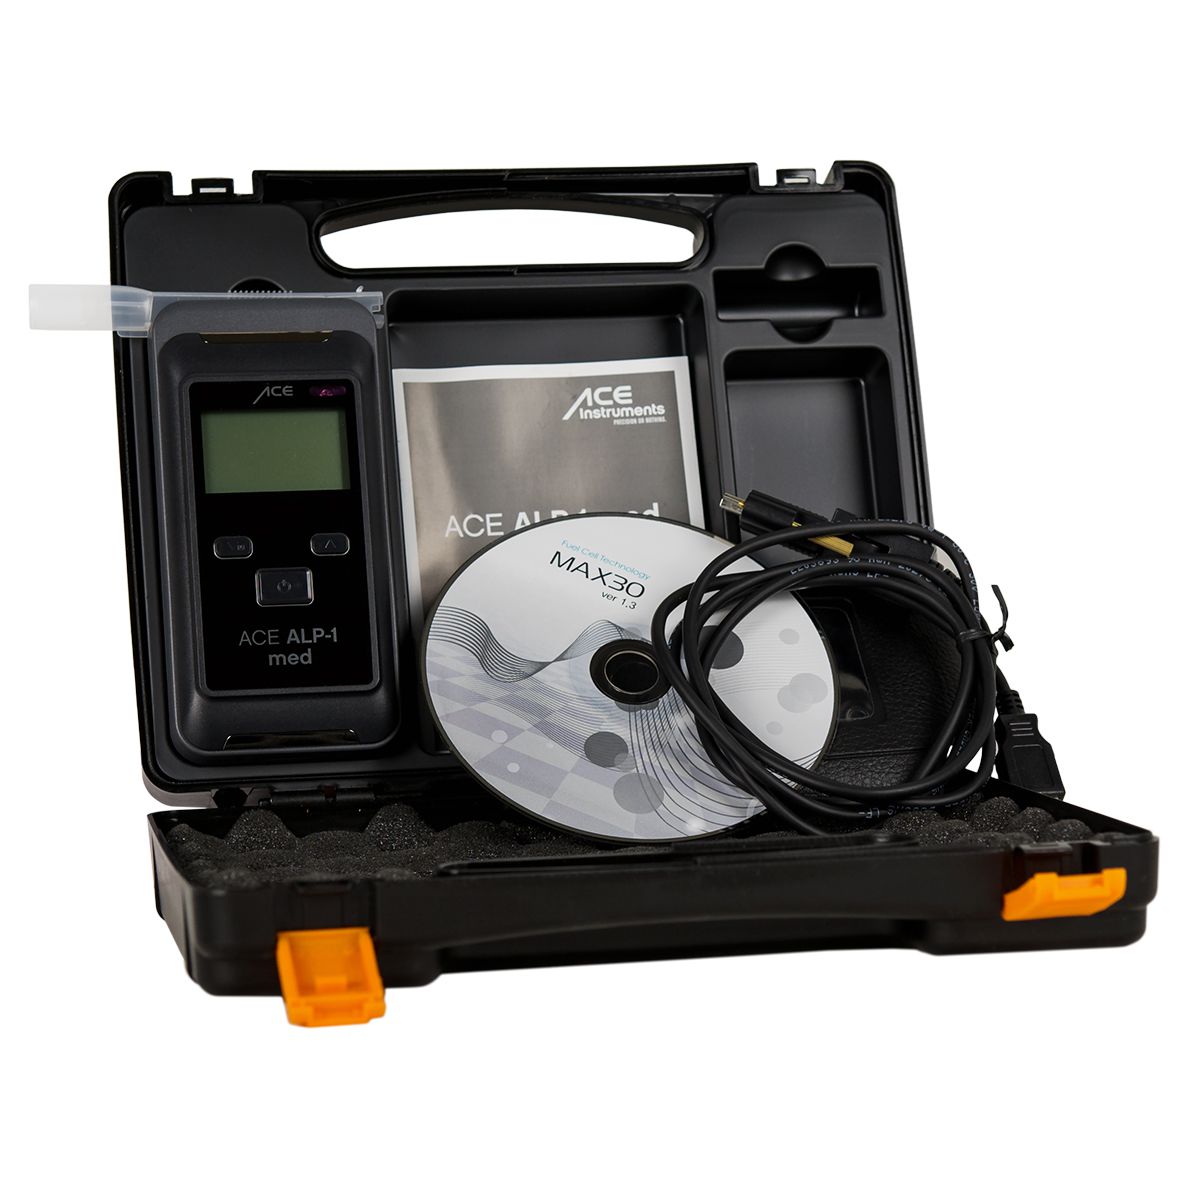 Rd900 Alkohol detektor Typ-C-Schnitts telle Atem tester schnelle Erkennung  von betrunkenem Fahren automatischer Alarm Gas Alkohol tester